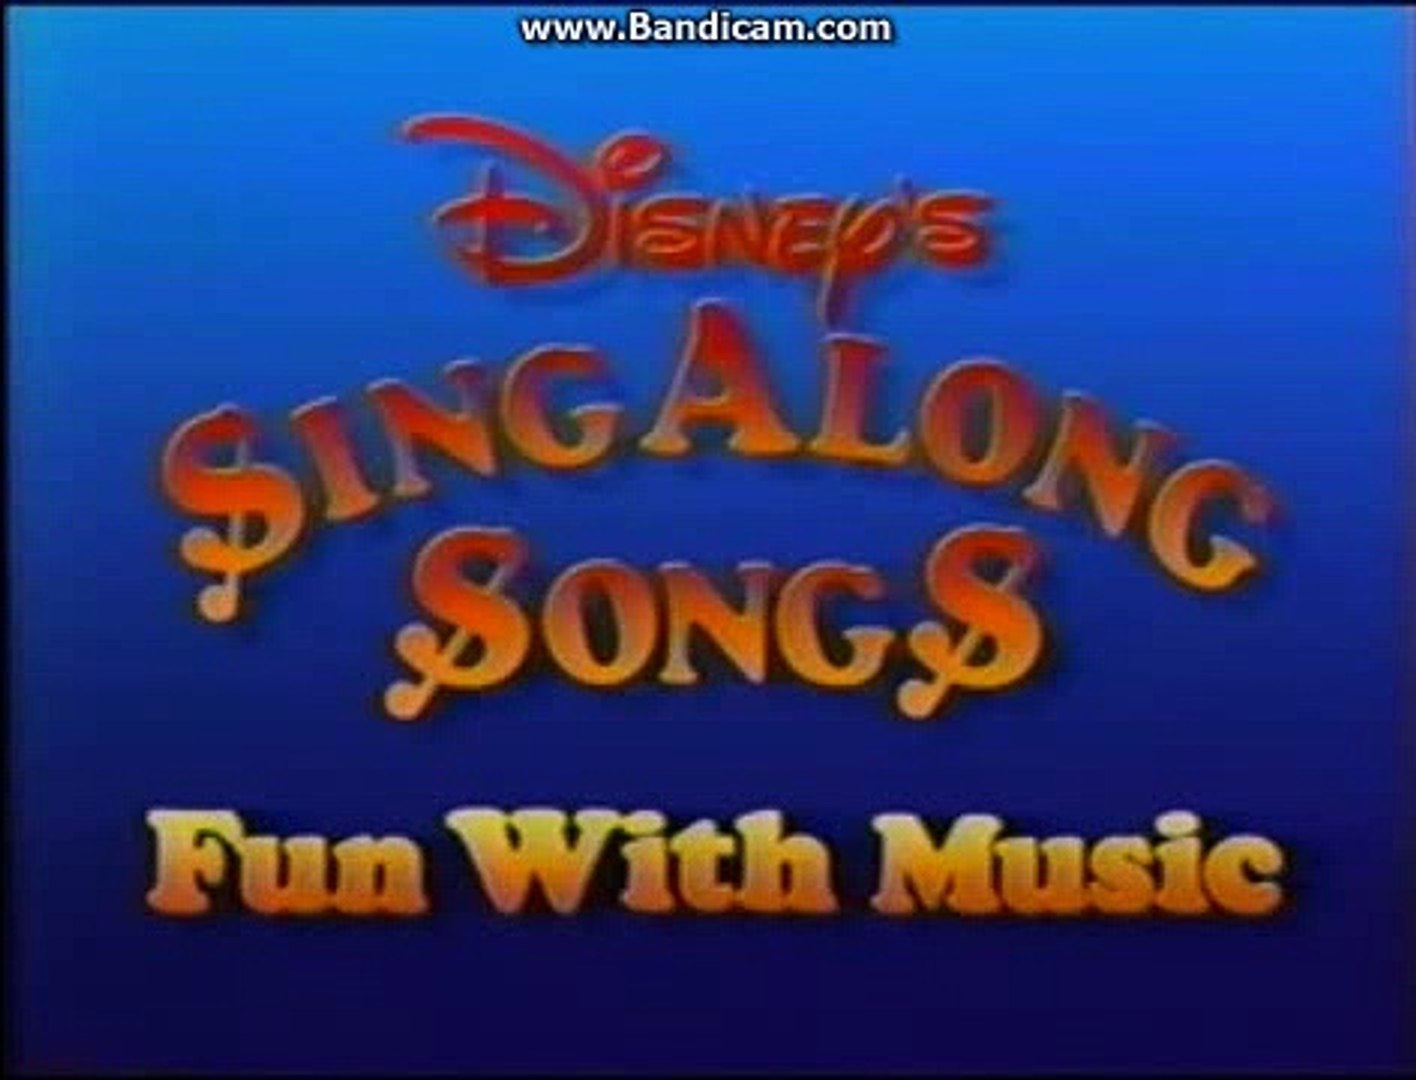 disney sing along songs logo